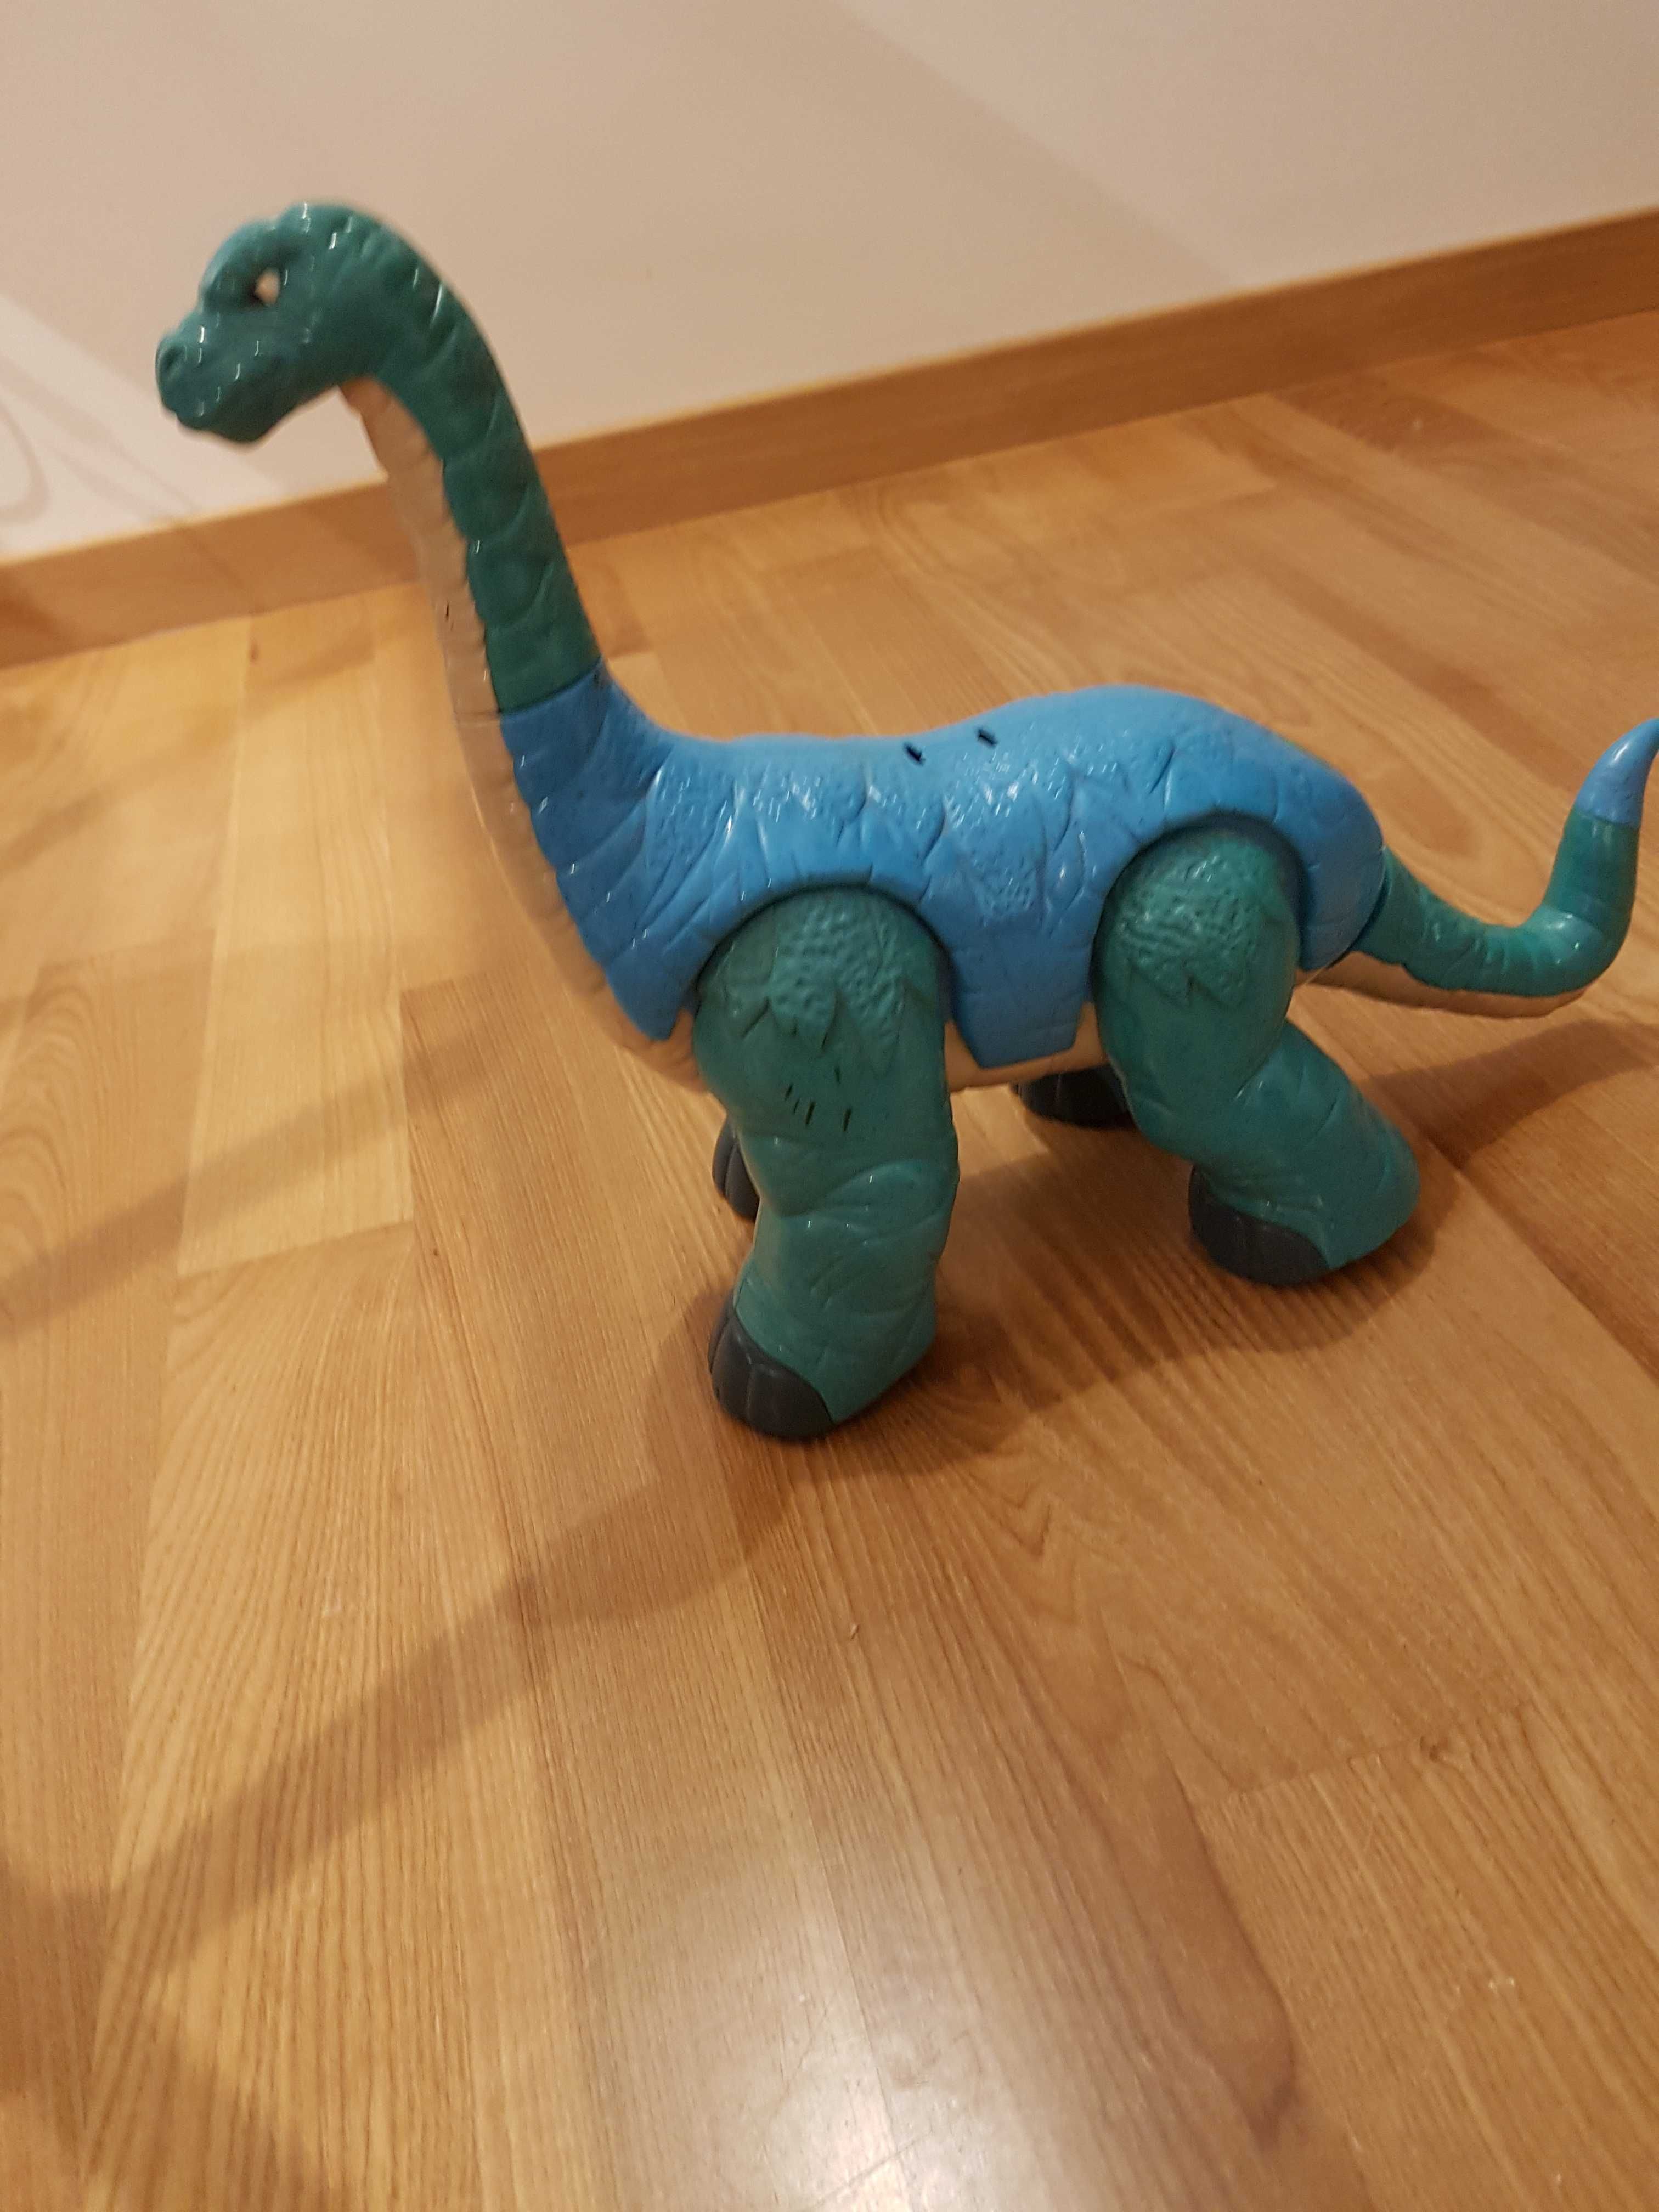 Dinozaur duża figurka plastikowa z ruchomą głową, nogami i ogonem